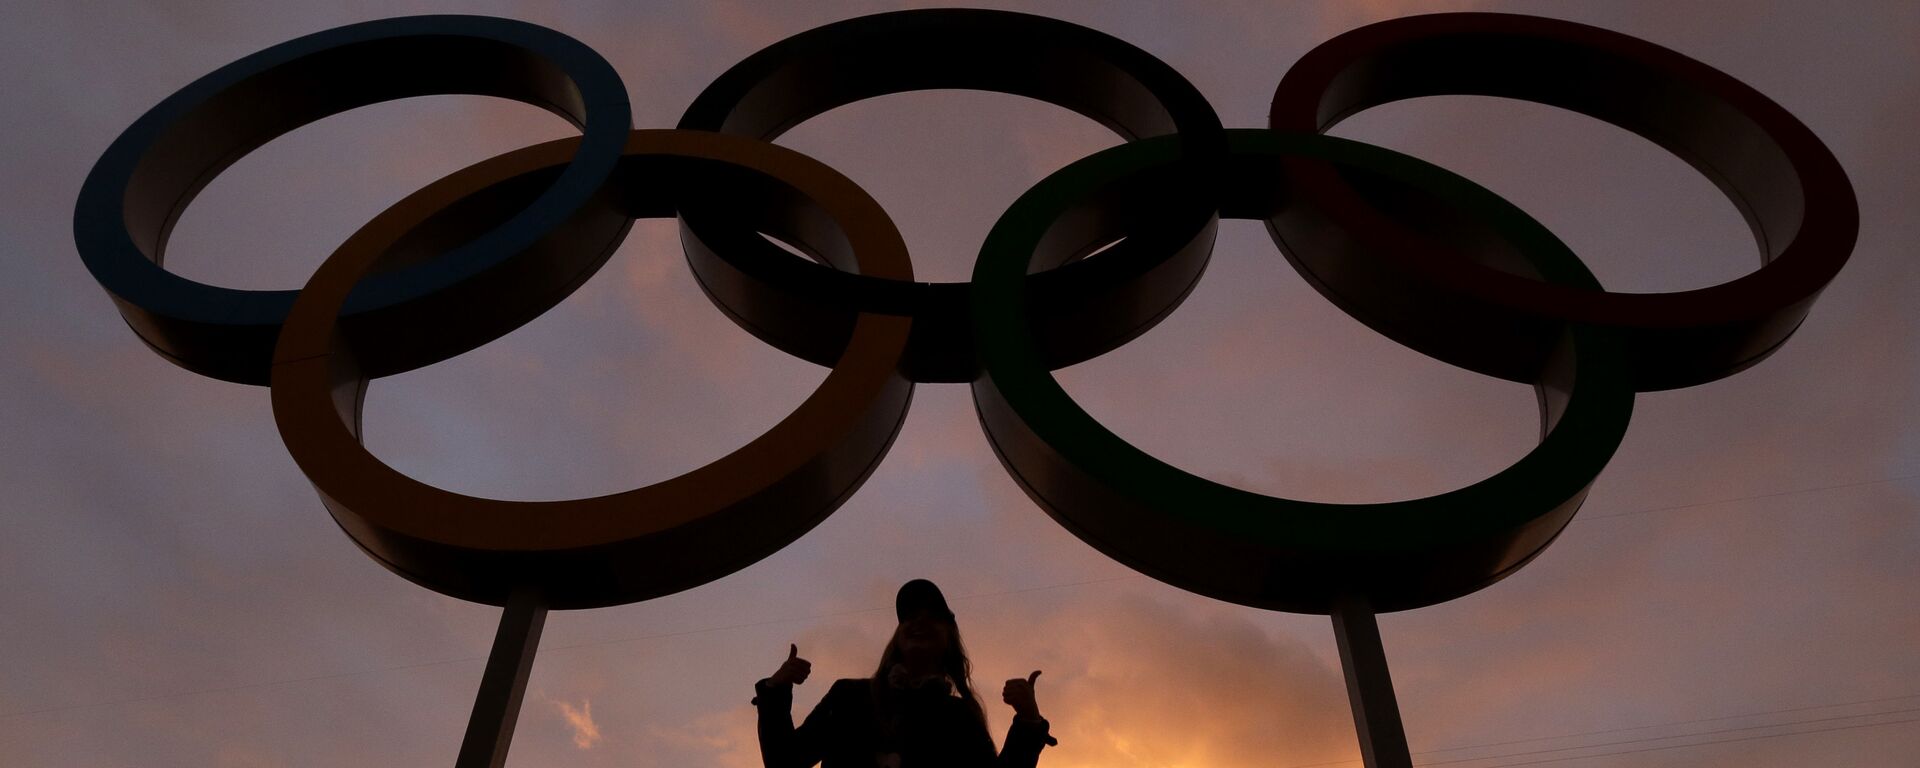 Женщина позирует с олимпийскими кольцами в Олимпийском парке во время подготовки к зимним Олимпийским играм 2014 года, среда, 5 февраля 2014 года, в Сочи, Россия. - Sputnik Абхазия, 1920, 13.08.2021